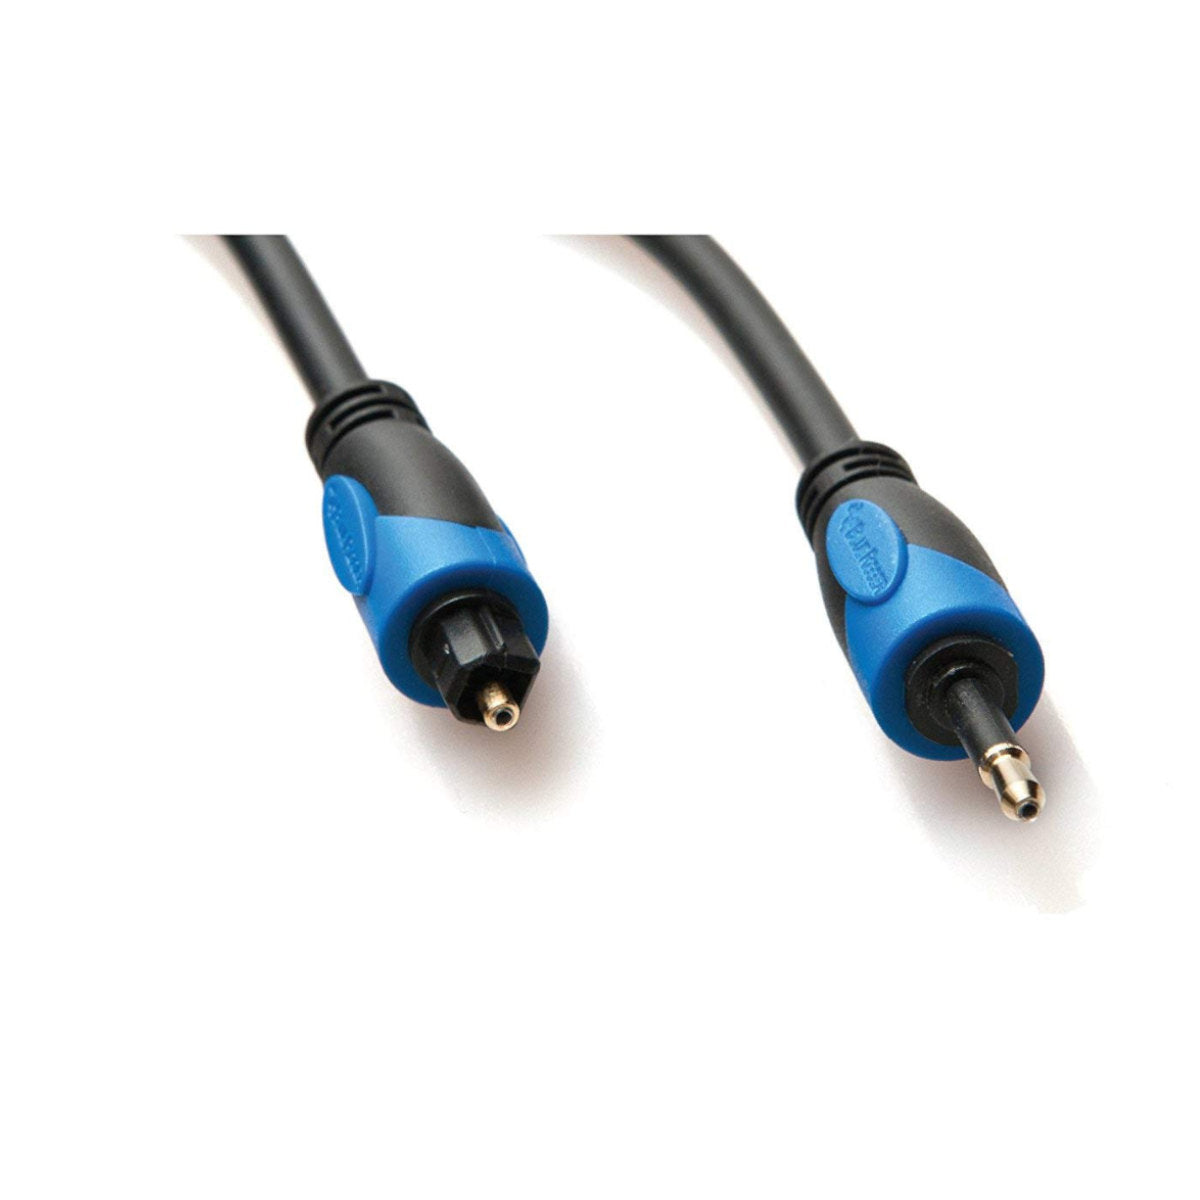 Cable de sonido Digital Toslink a Mini Toslink, Cable óptico SPDIF